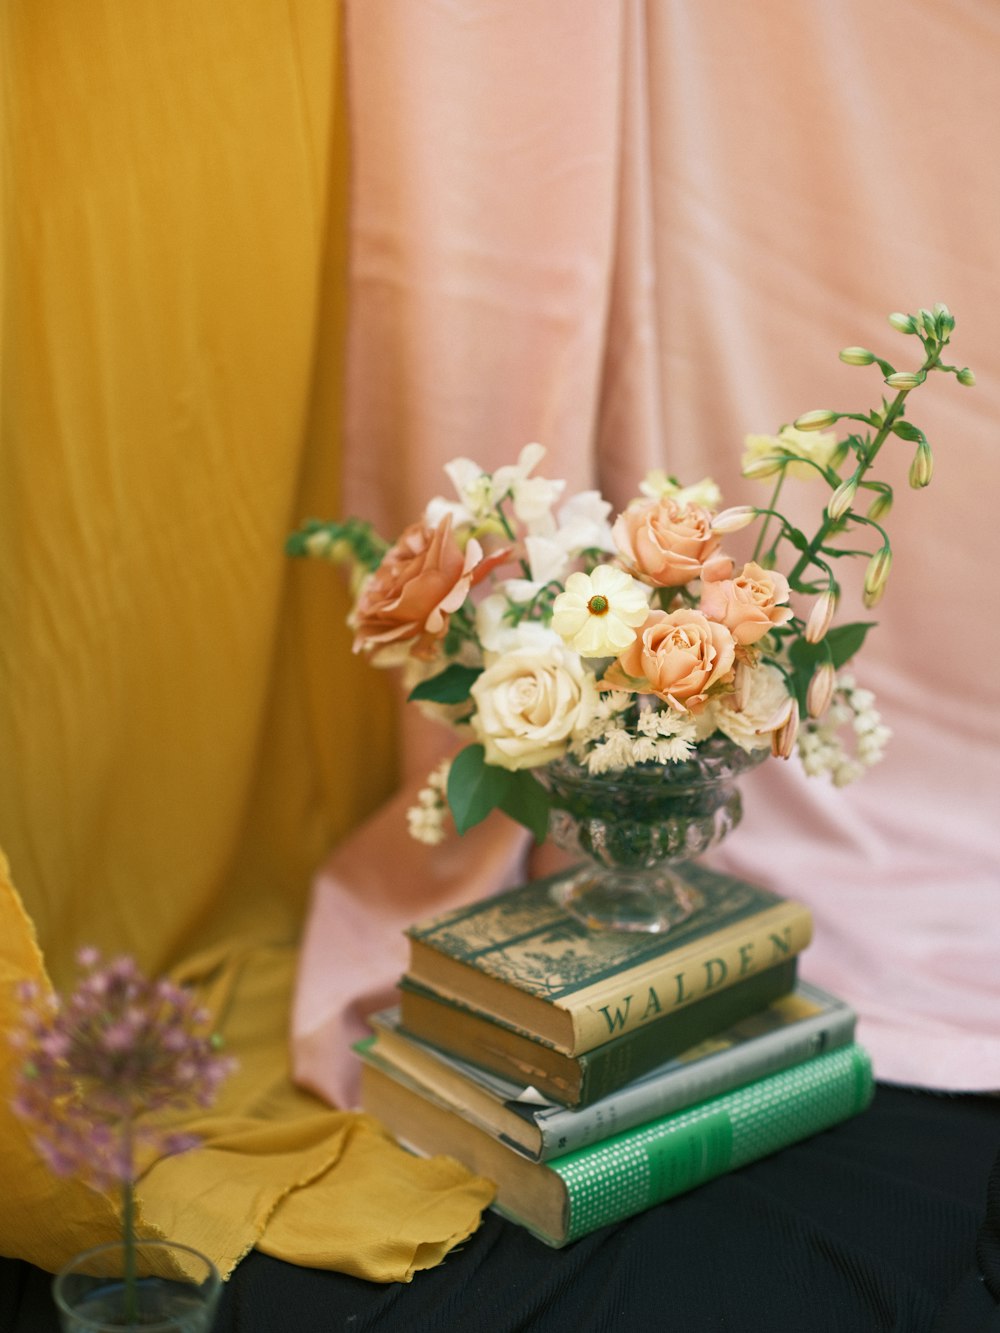 Eine Vase mit Blumen auf einem Bücherstapel